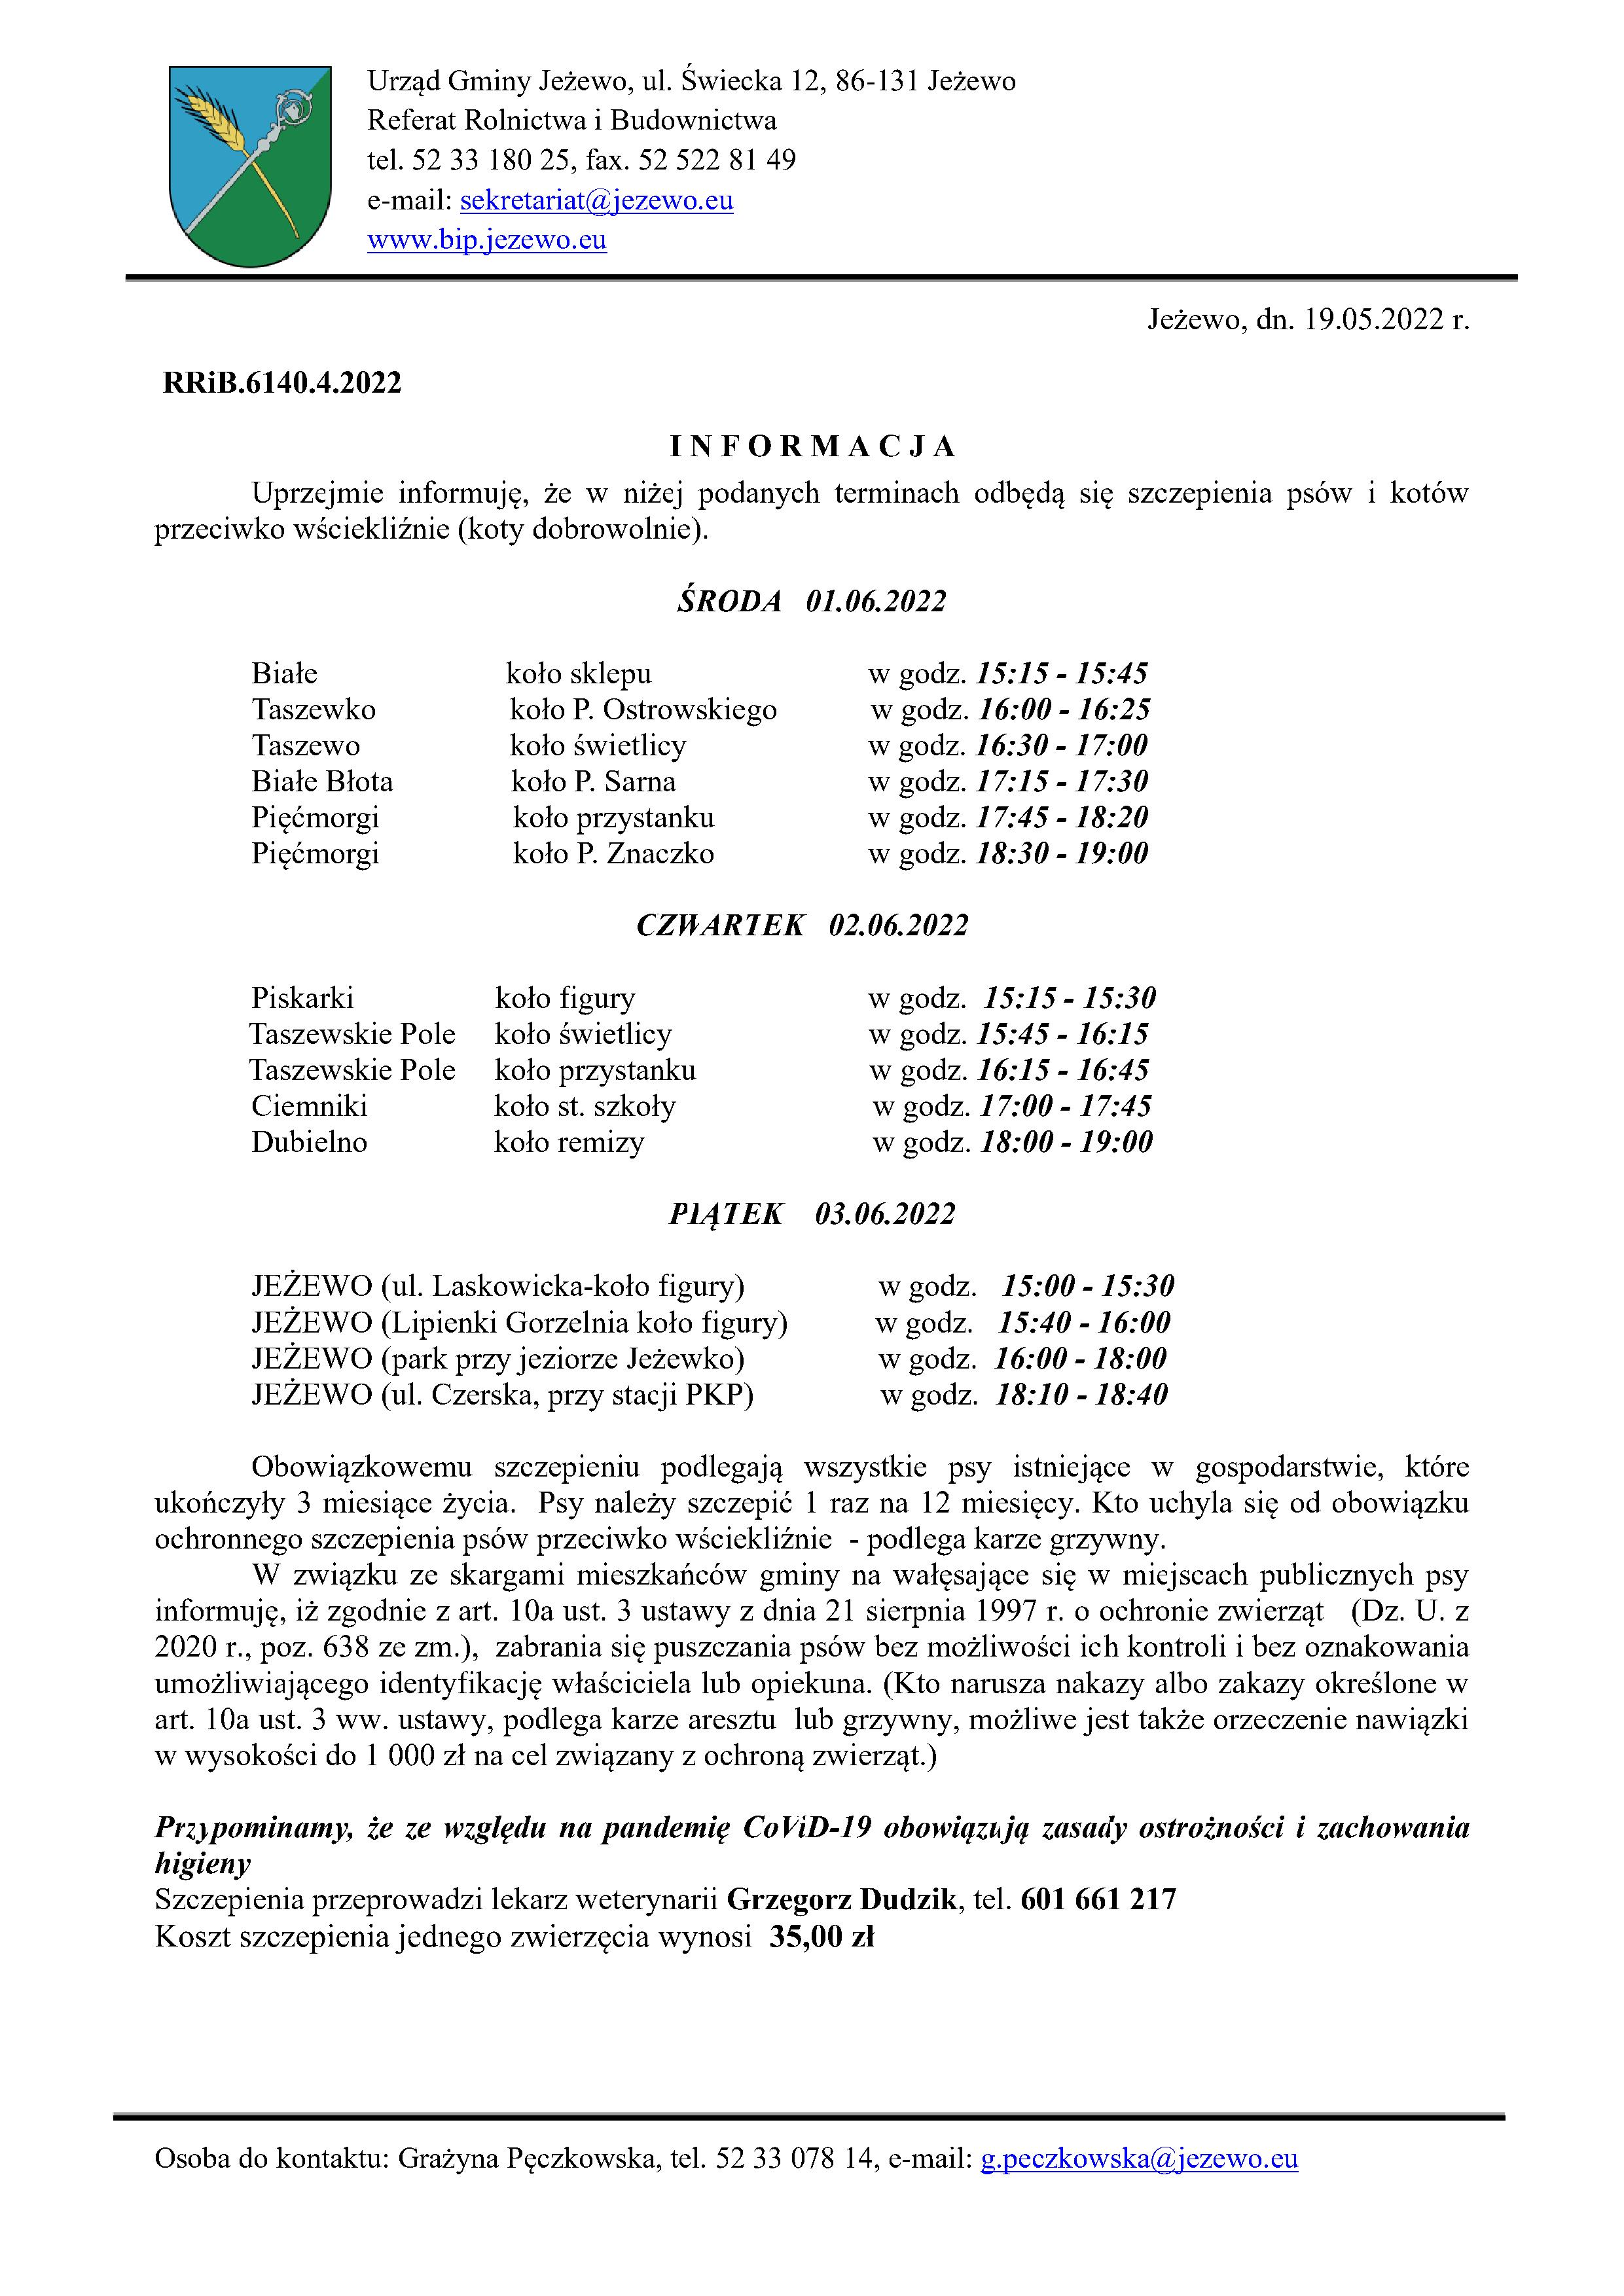 Informacja w sprawie szczepienia psów i kotów 1-3.06.2022 r.